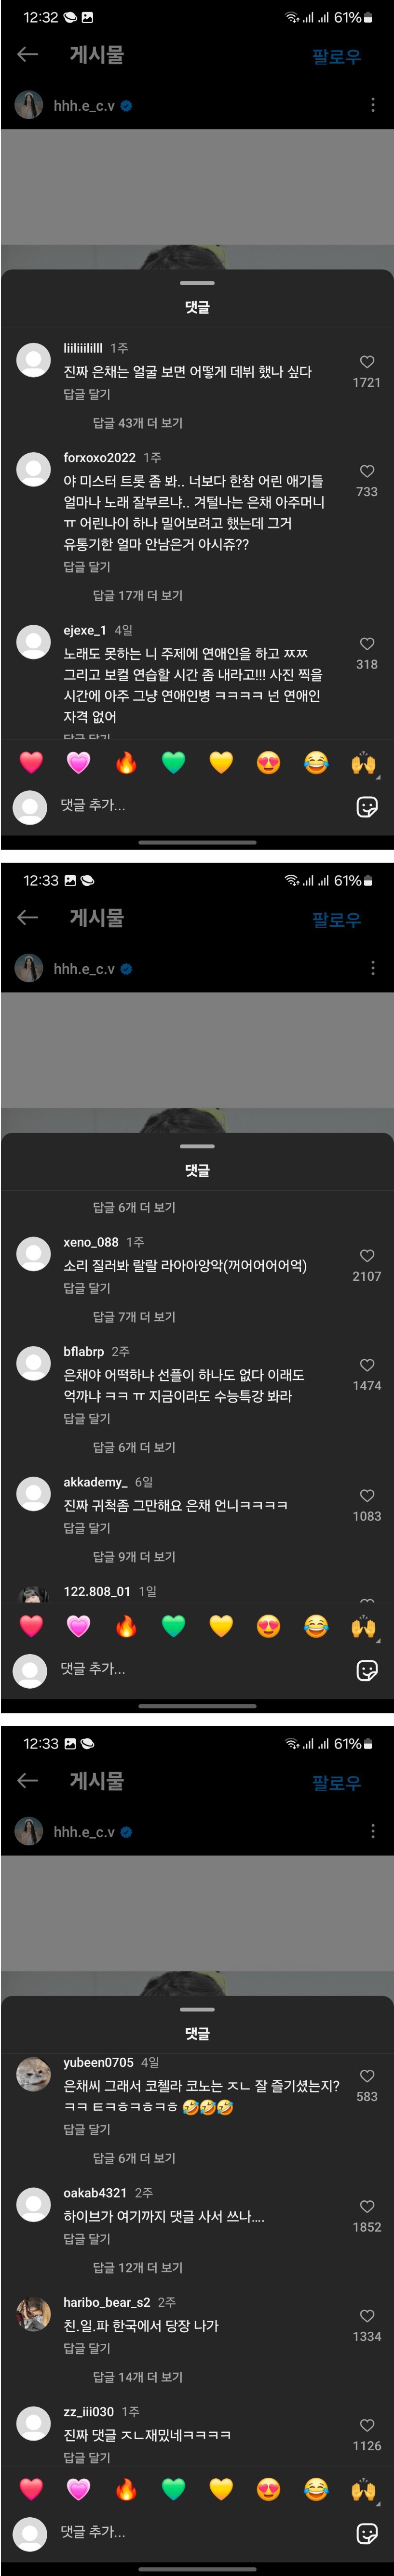 르세라핌 홍은채 인스타 악플 근황.jpg